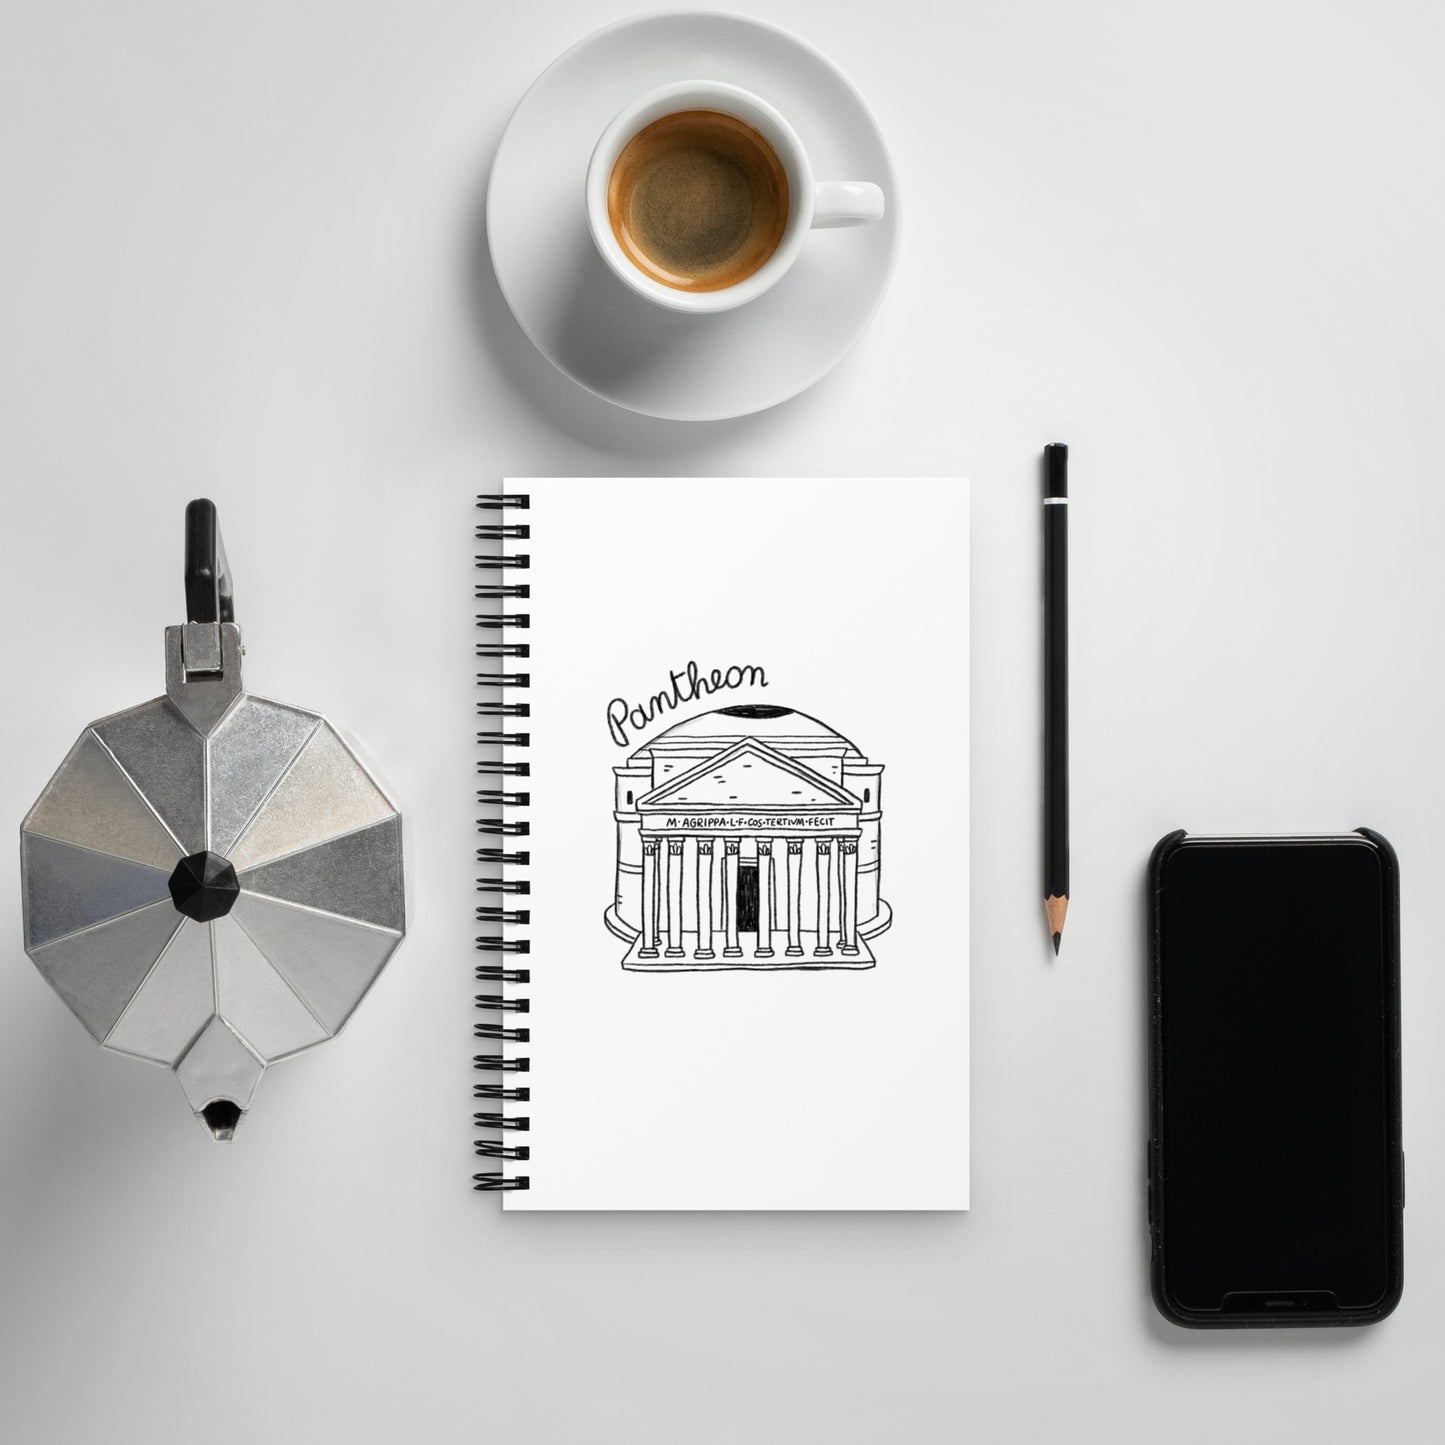 Pantheon on a Spiral notebook